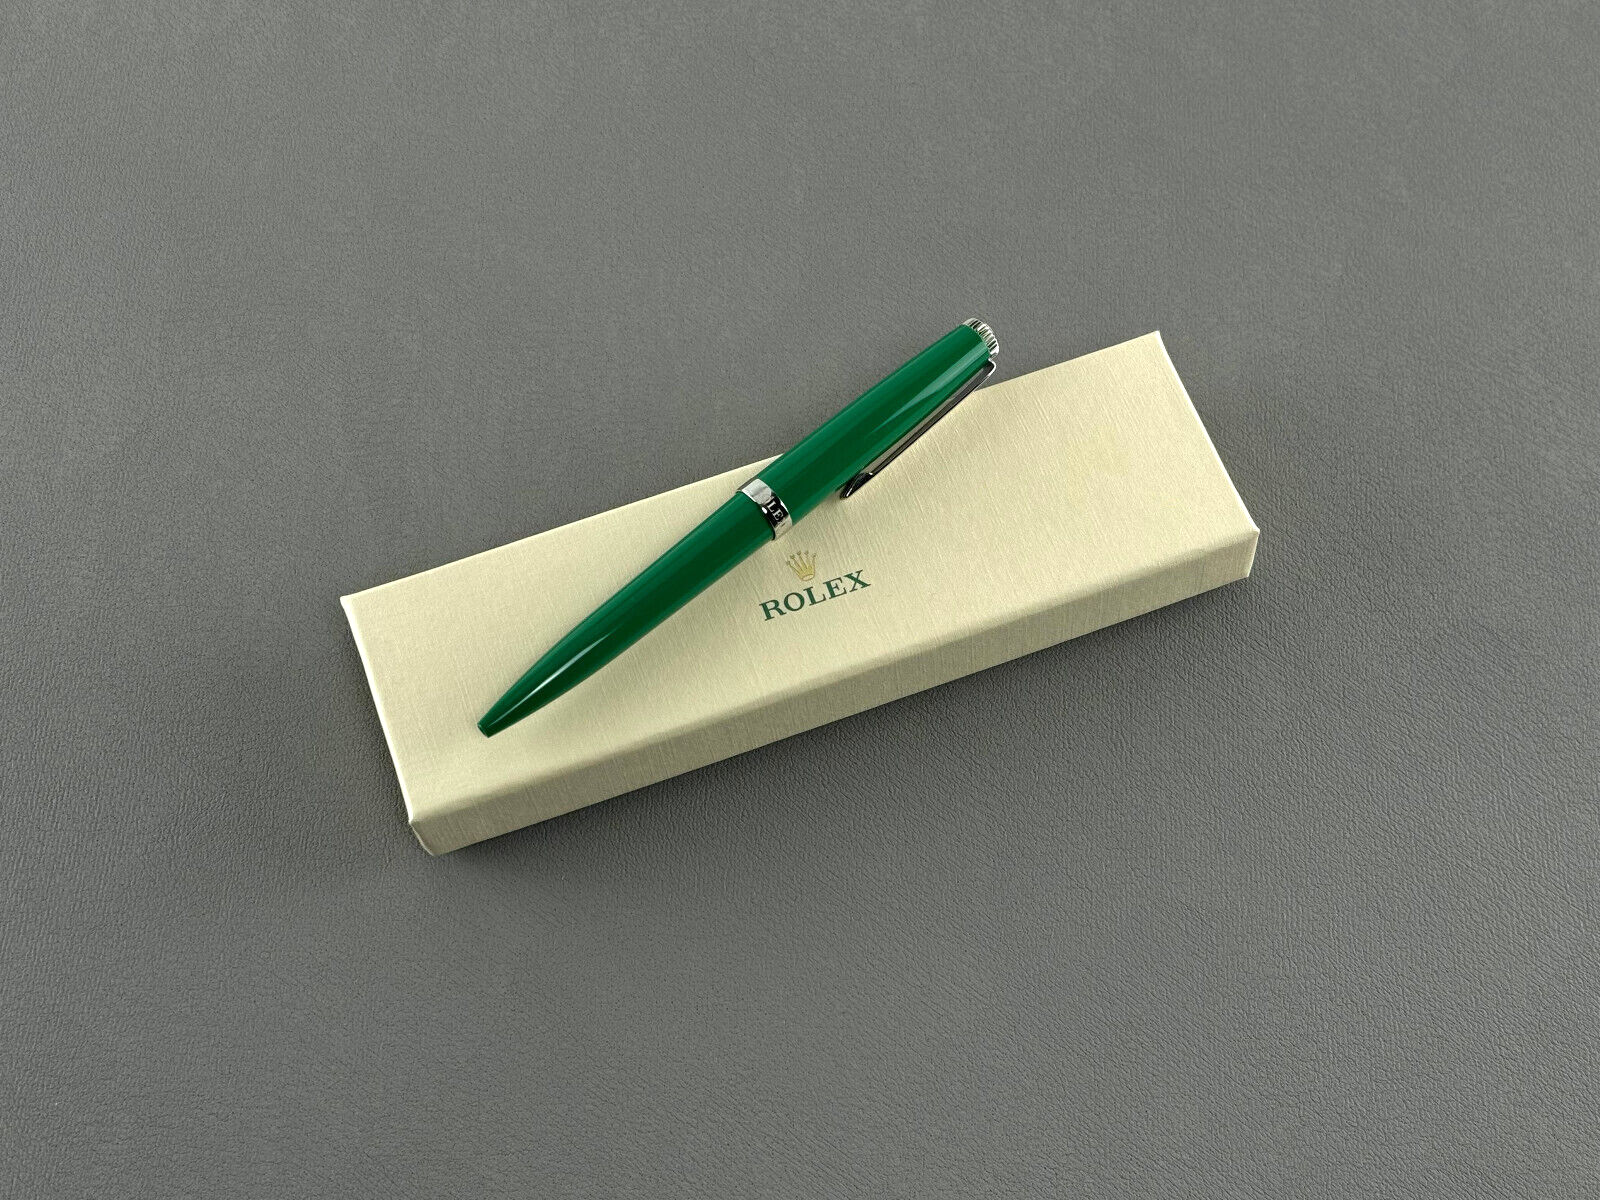  Rolex Kugelschreiber Drehkugelschreiber Kuli Stift ballpoint pen Grün green